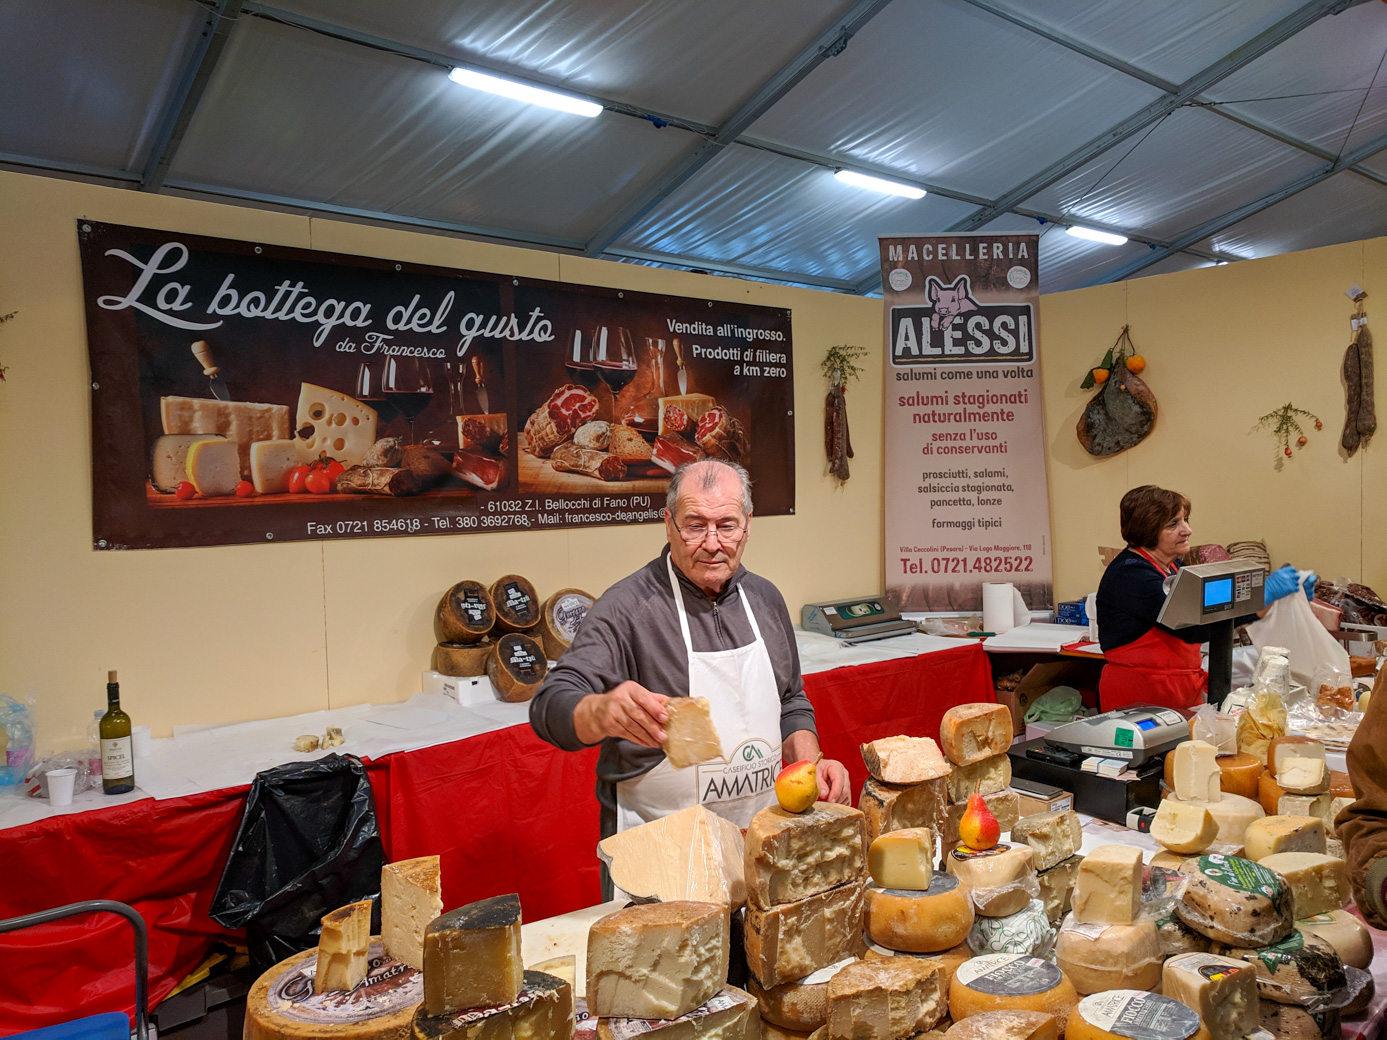 cheese vendor at the fair